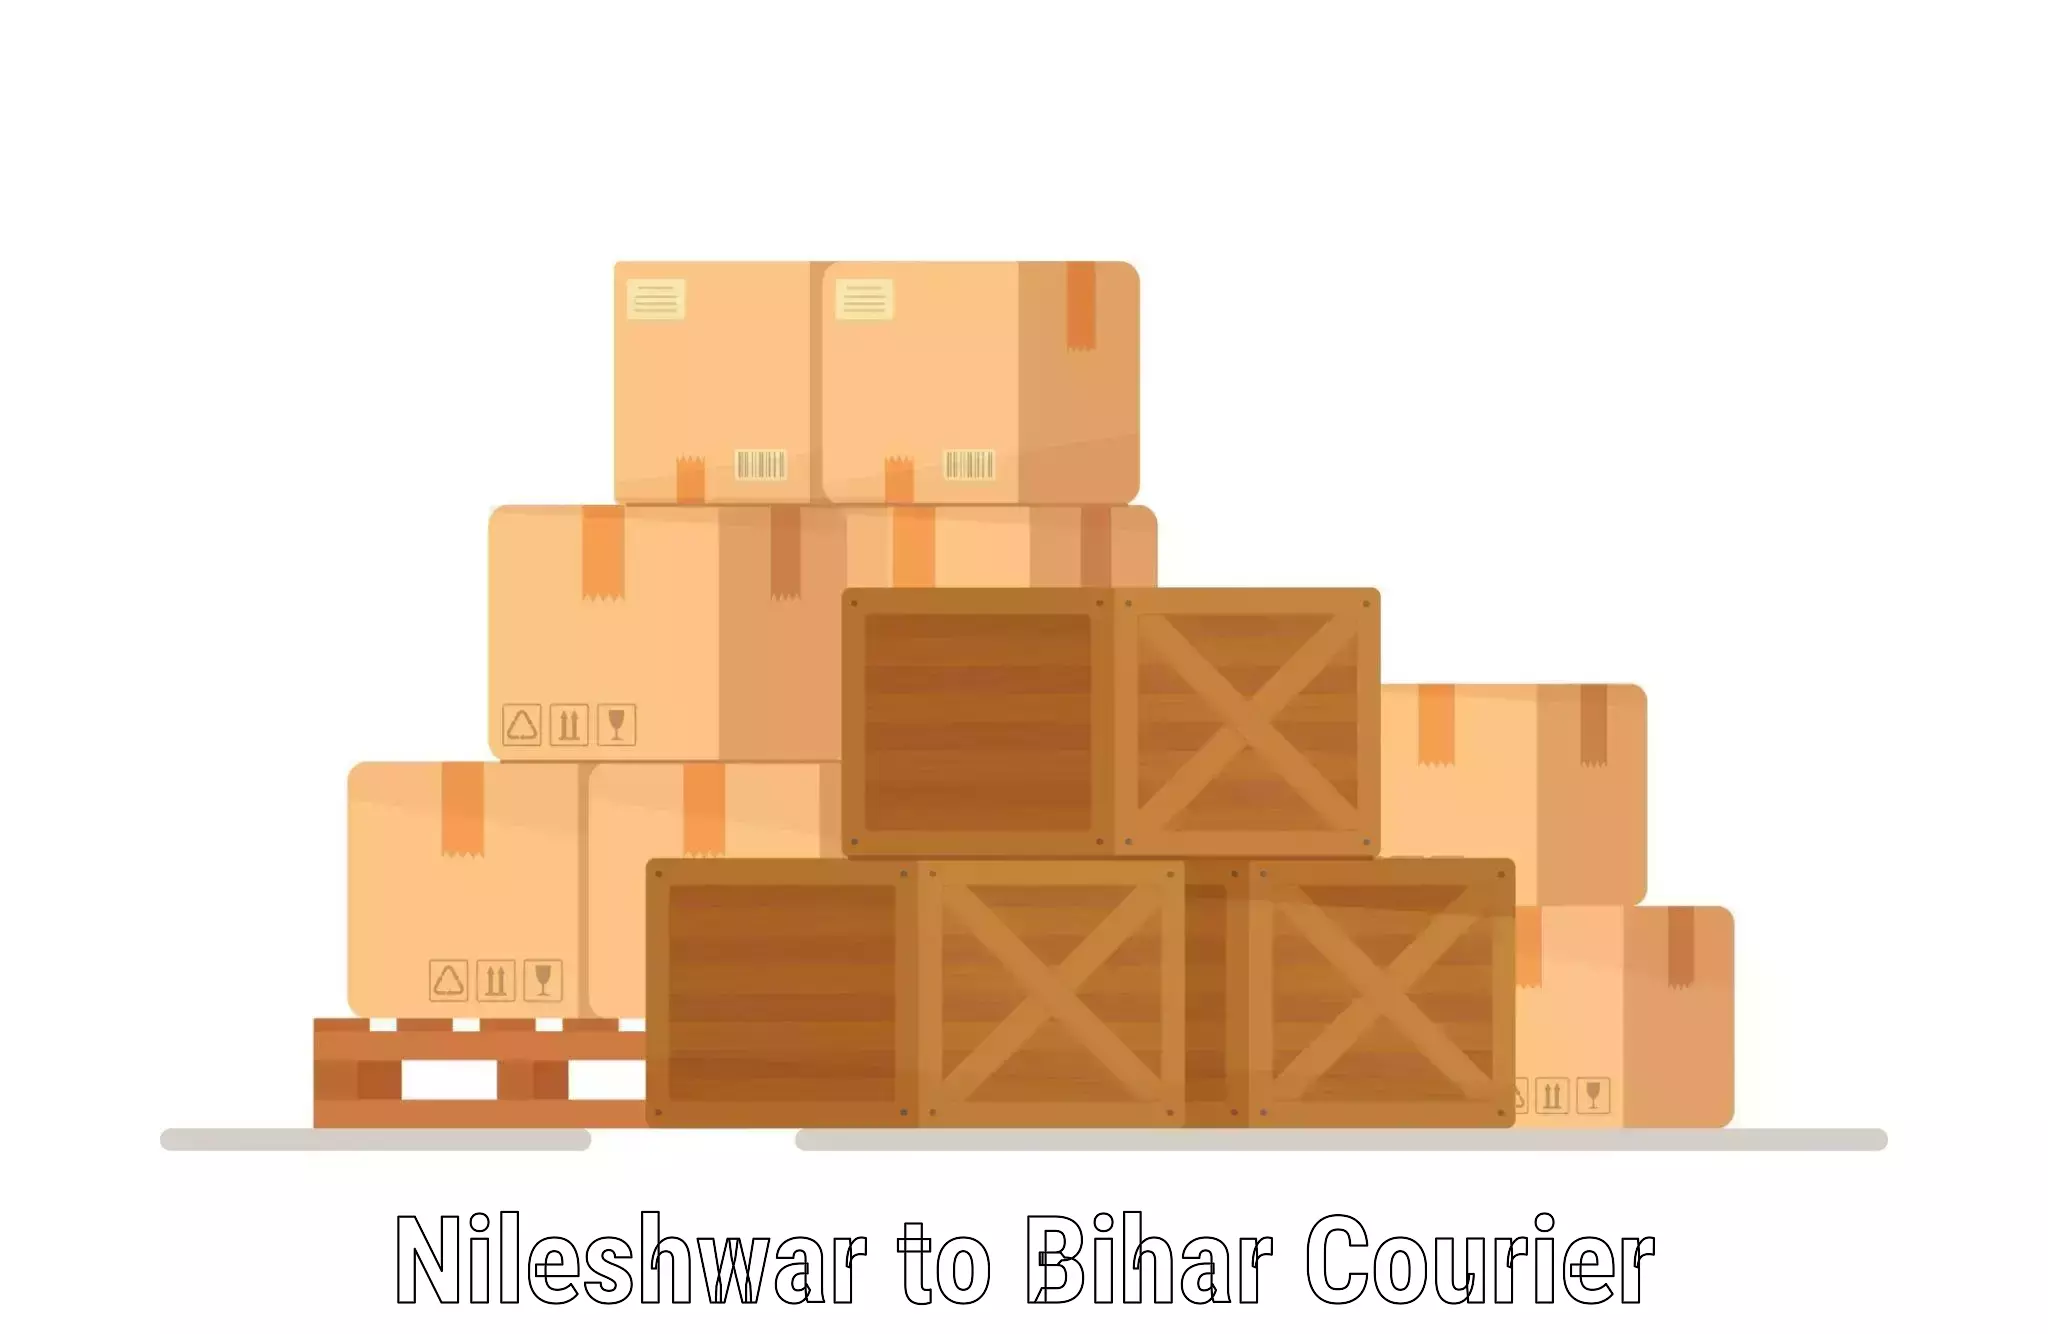 Multi-modal transportation Nileshwar to Narkatiaganj